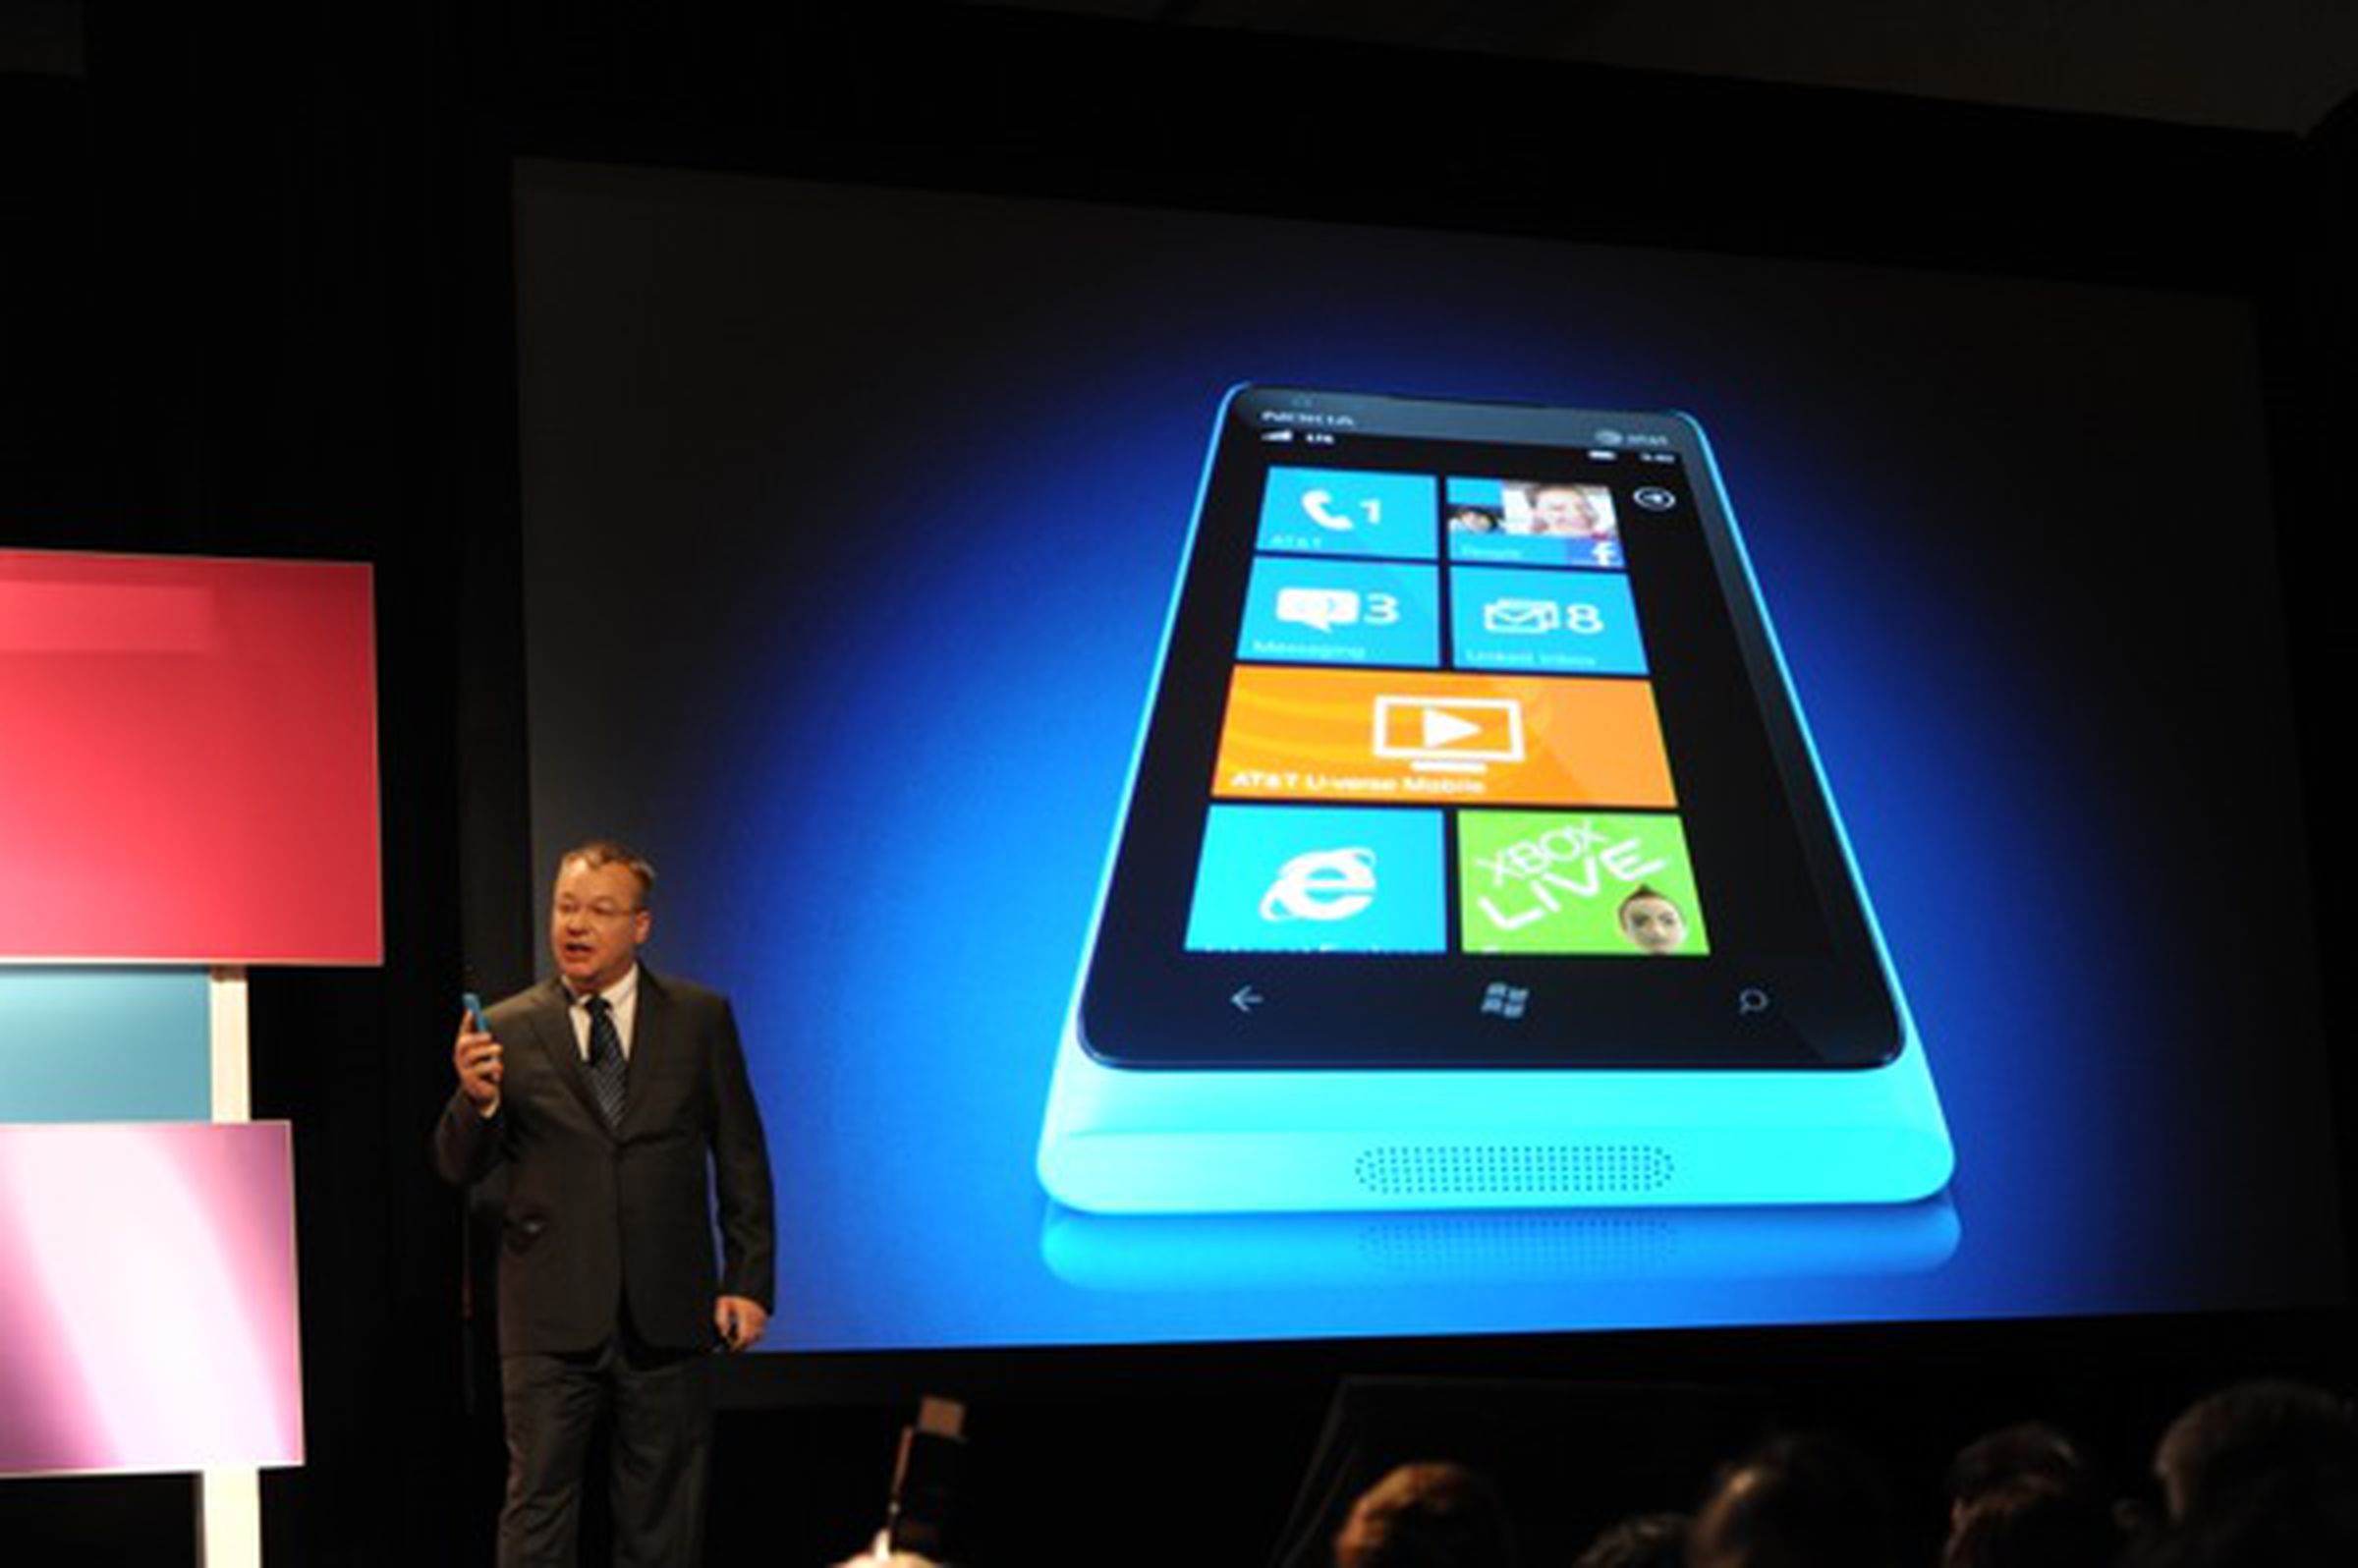 Nokia Lumia 900 announcement images